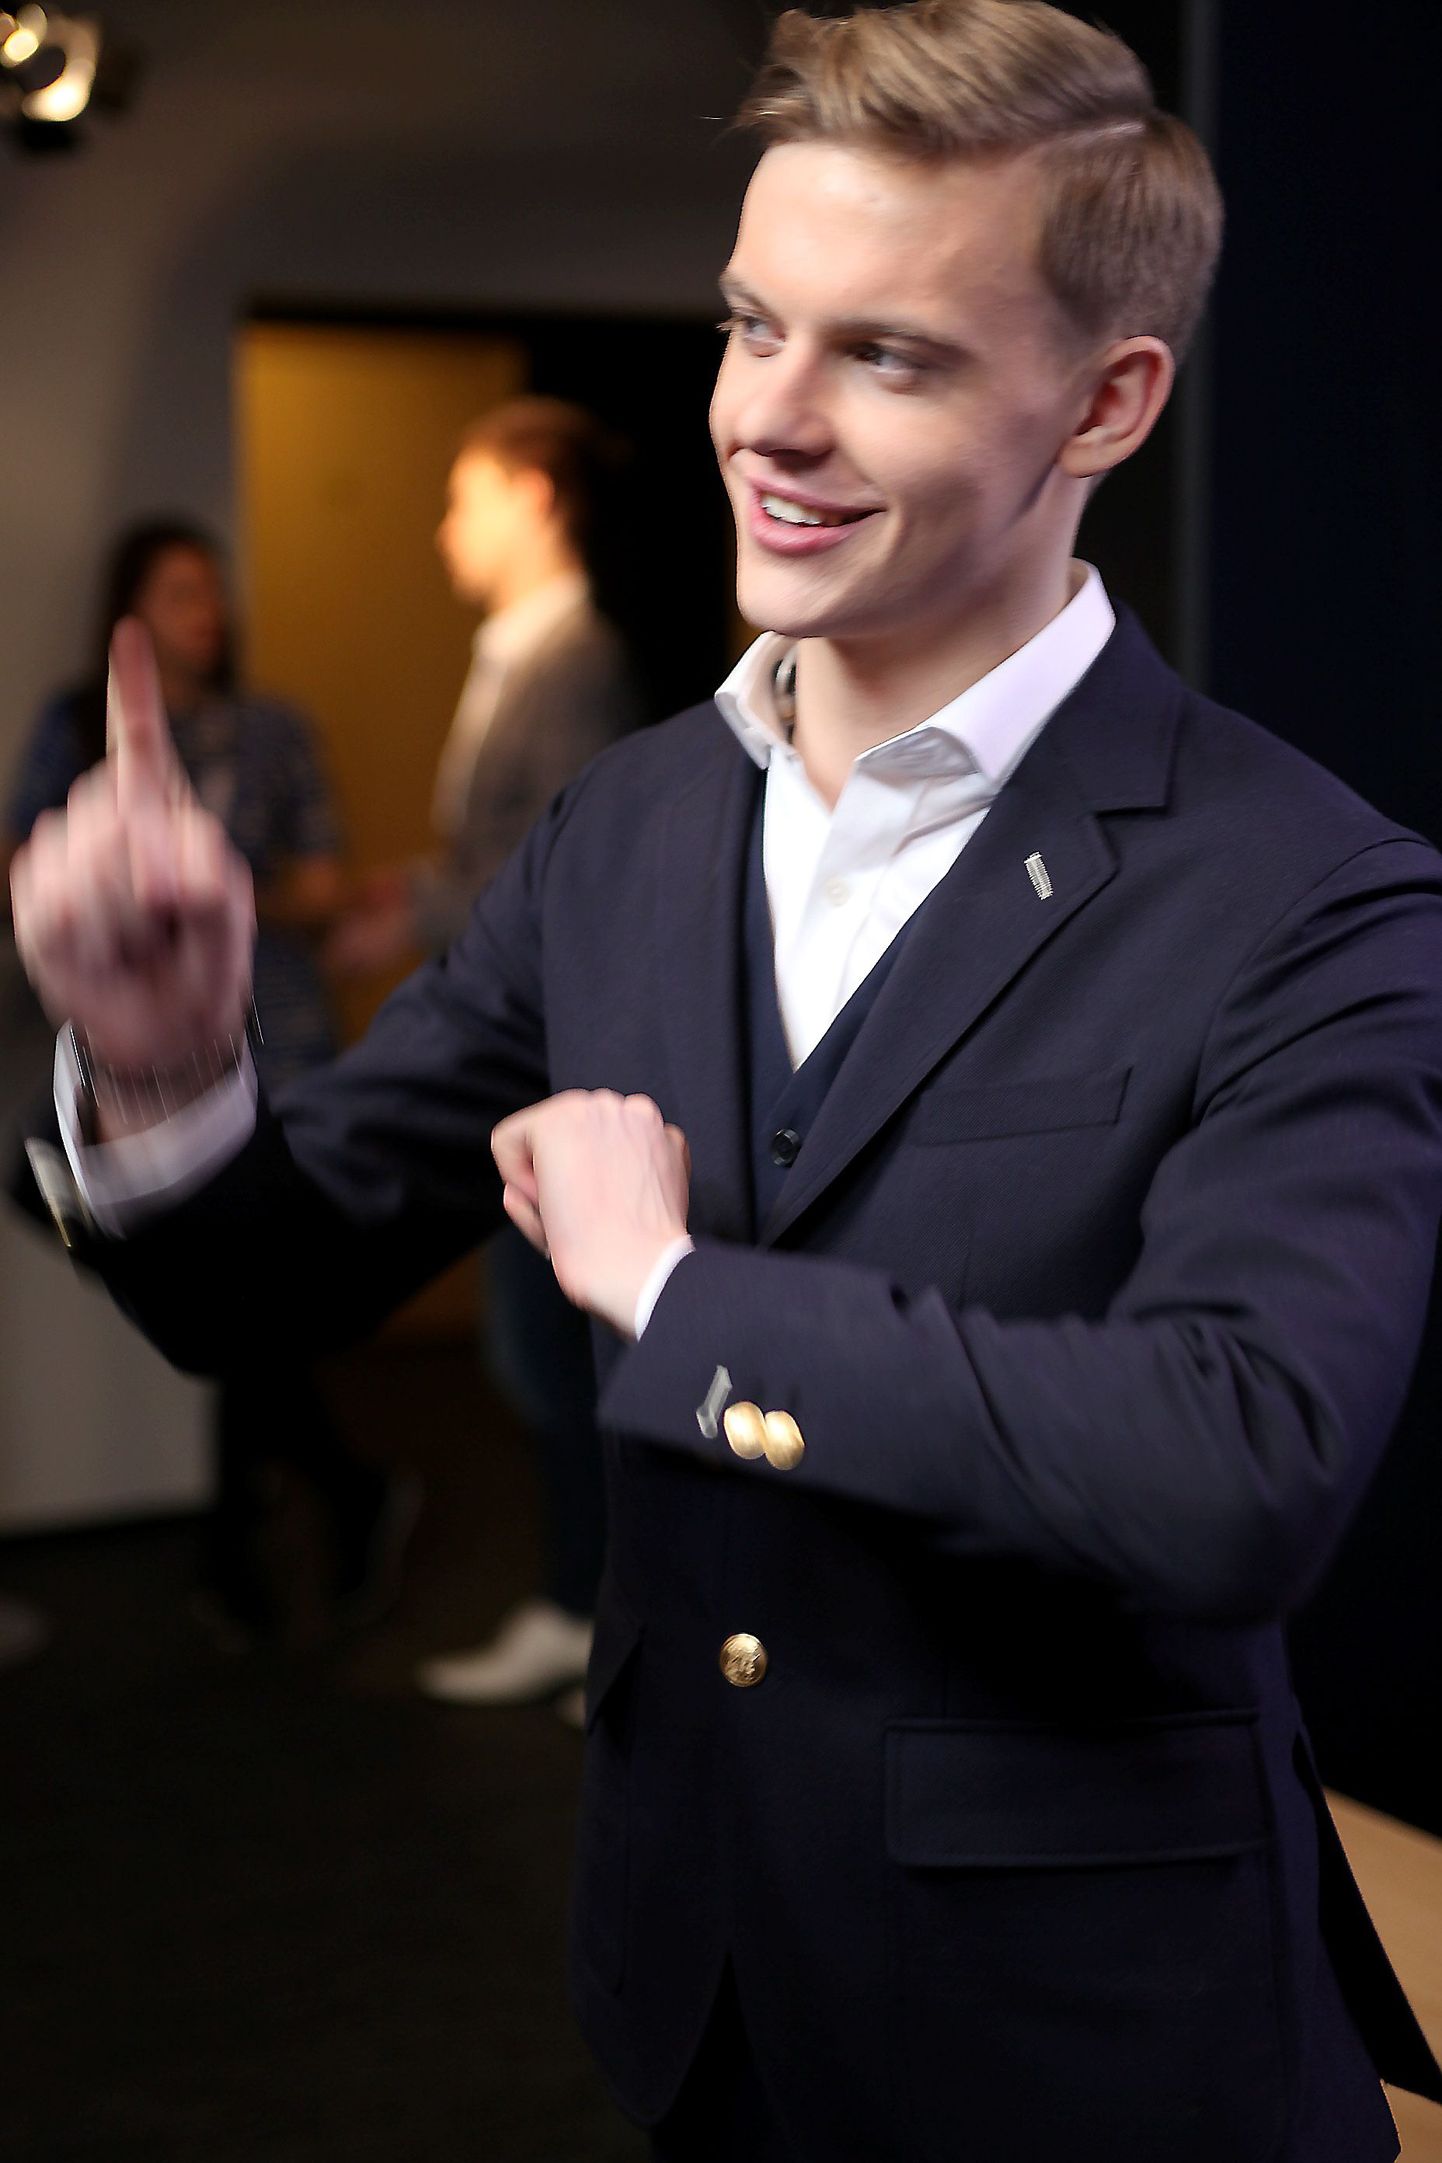 Юри Поотсманн представит Эстонию на "Евровидении-2016".